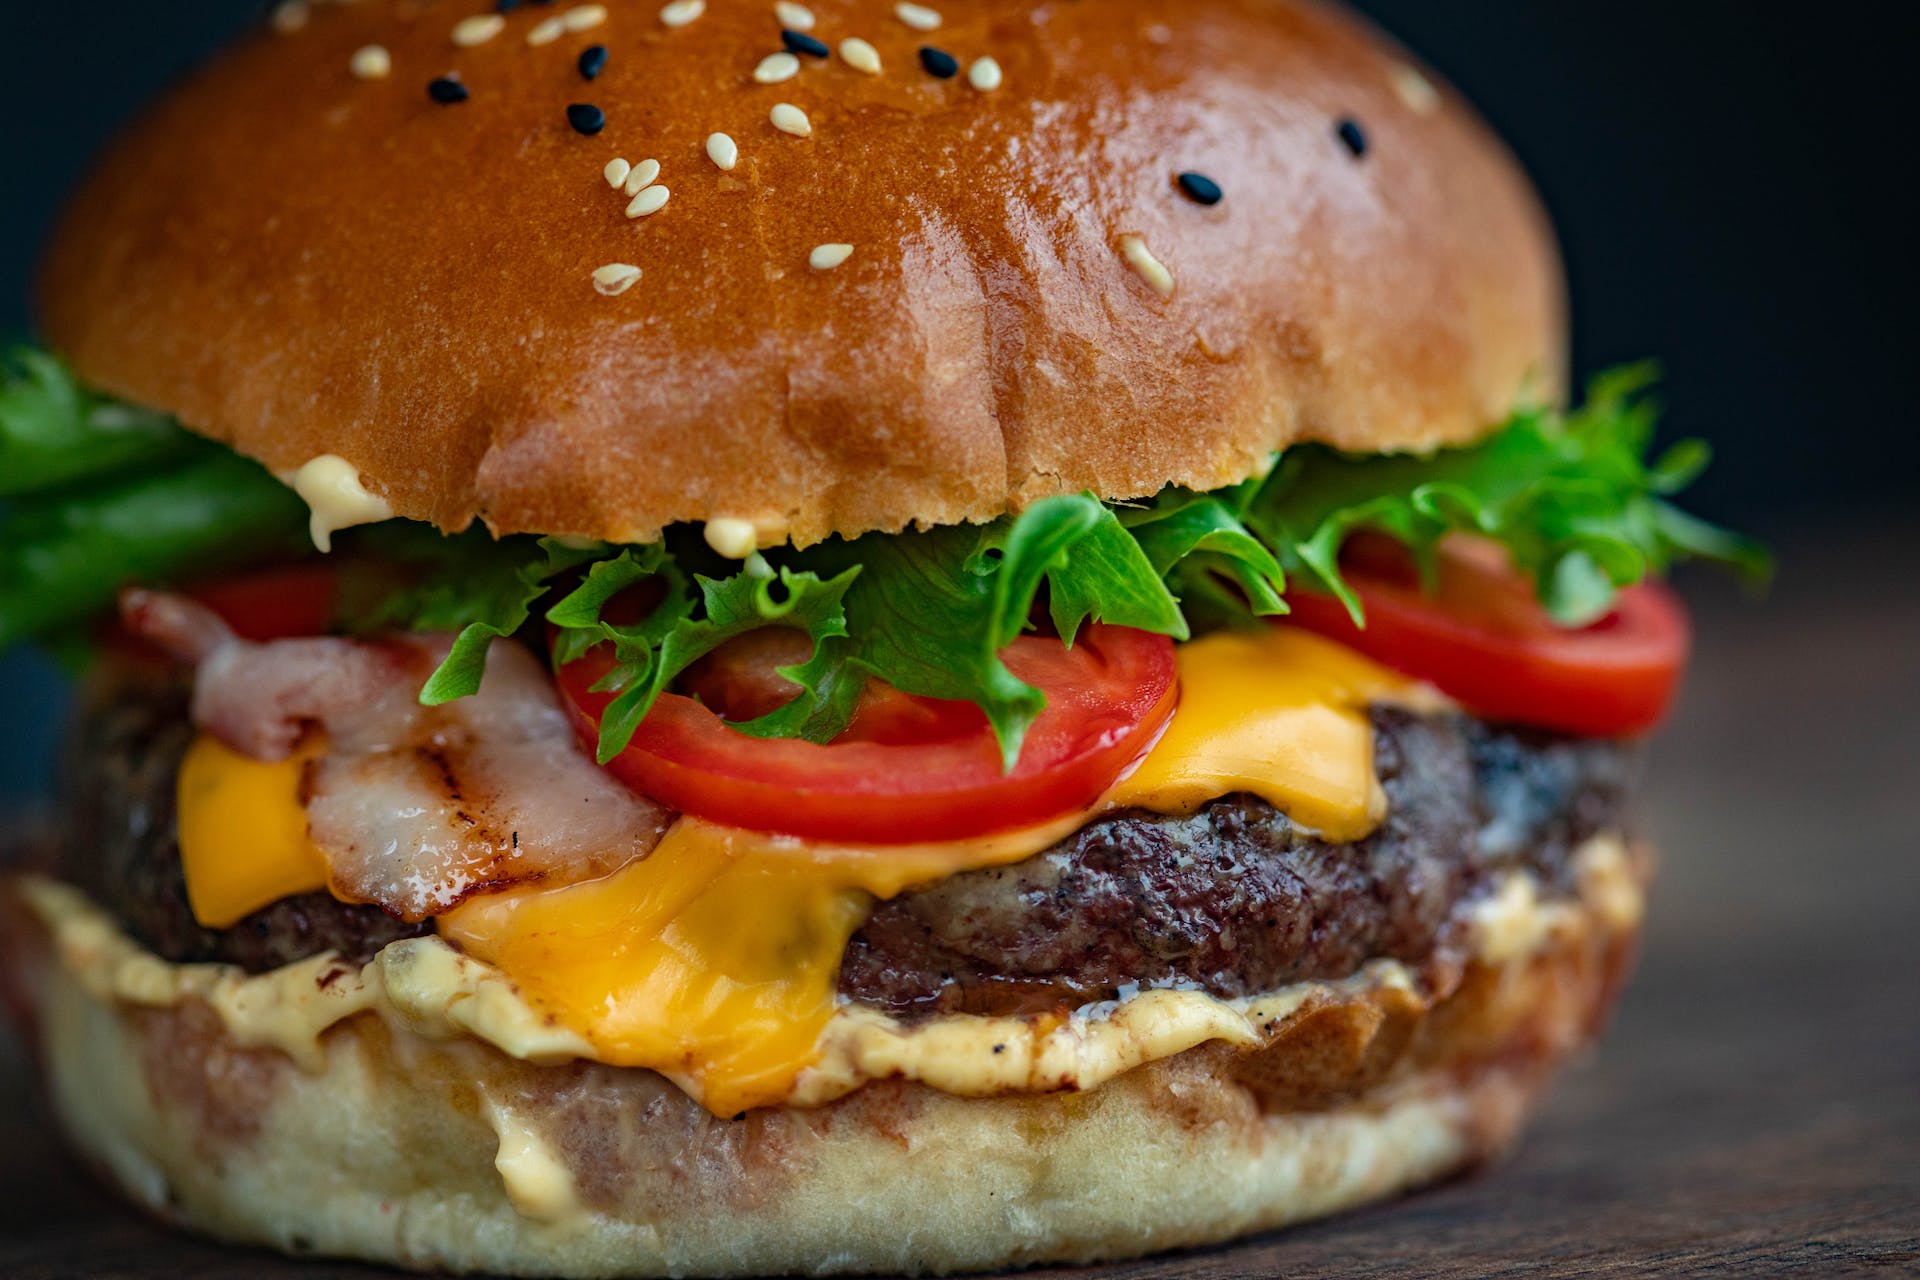 Close-up of a burger | Source: Pexels